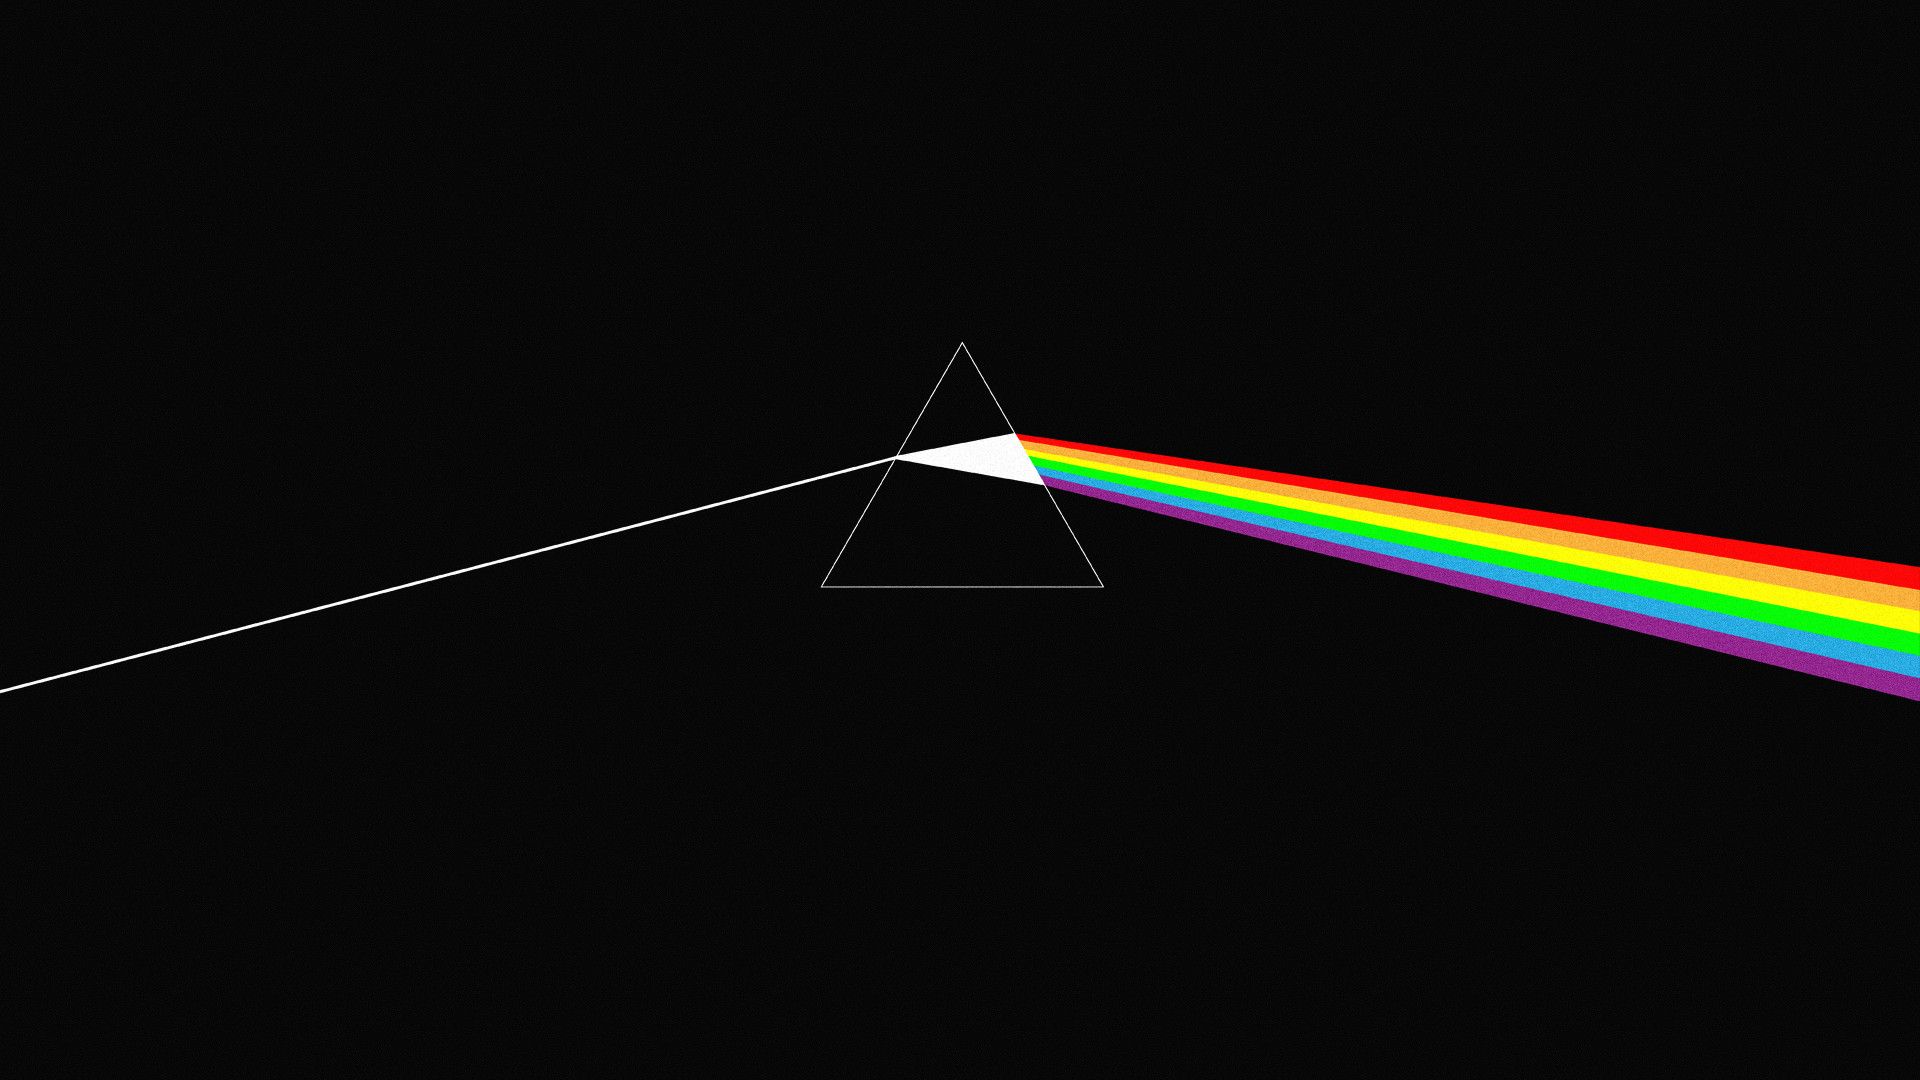 Pink Floyd Celebra 50 Años de "The Dark Side of the Moon" con el Documental "Eclipse"